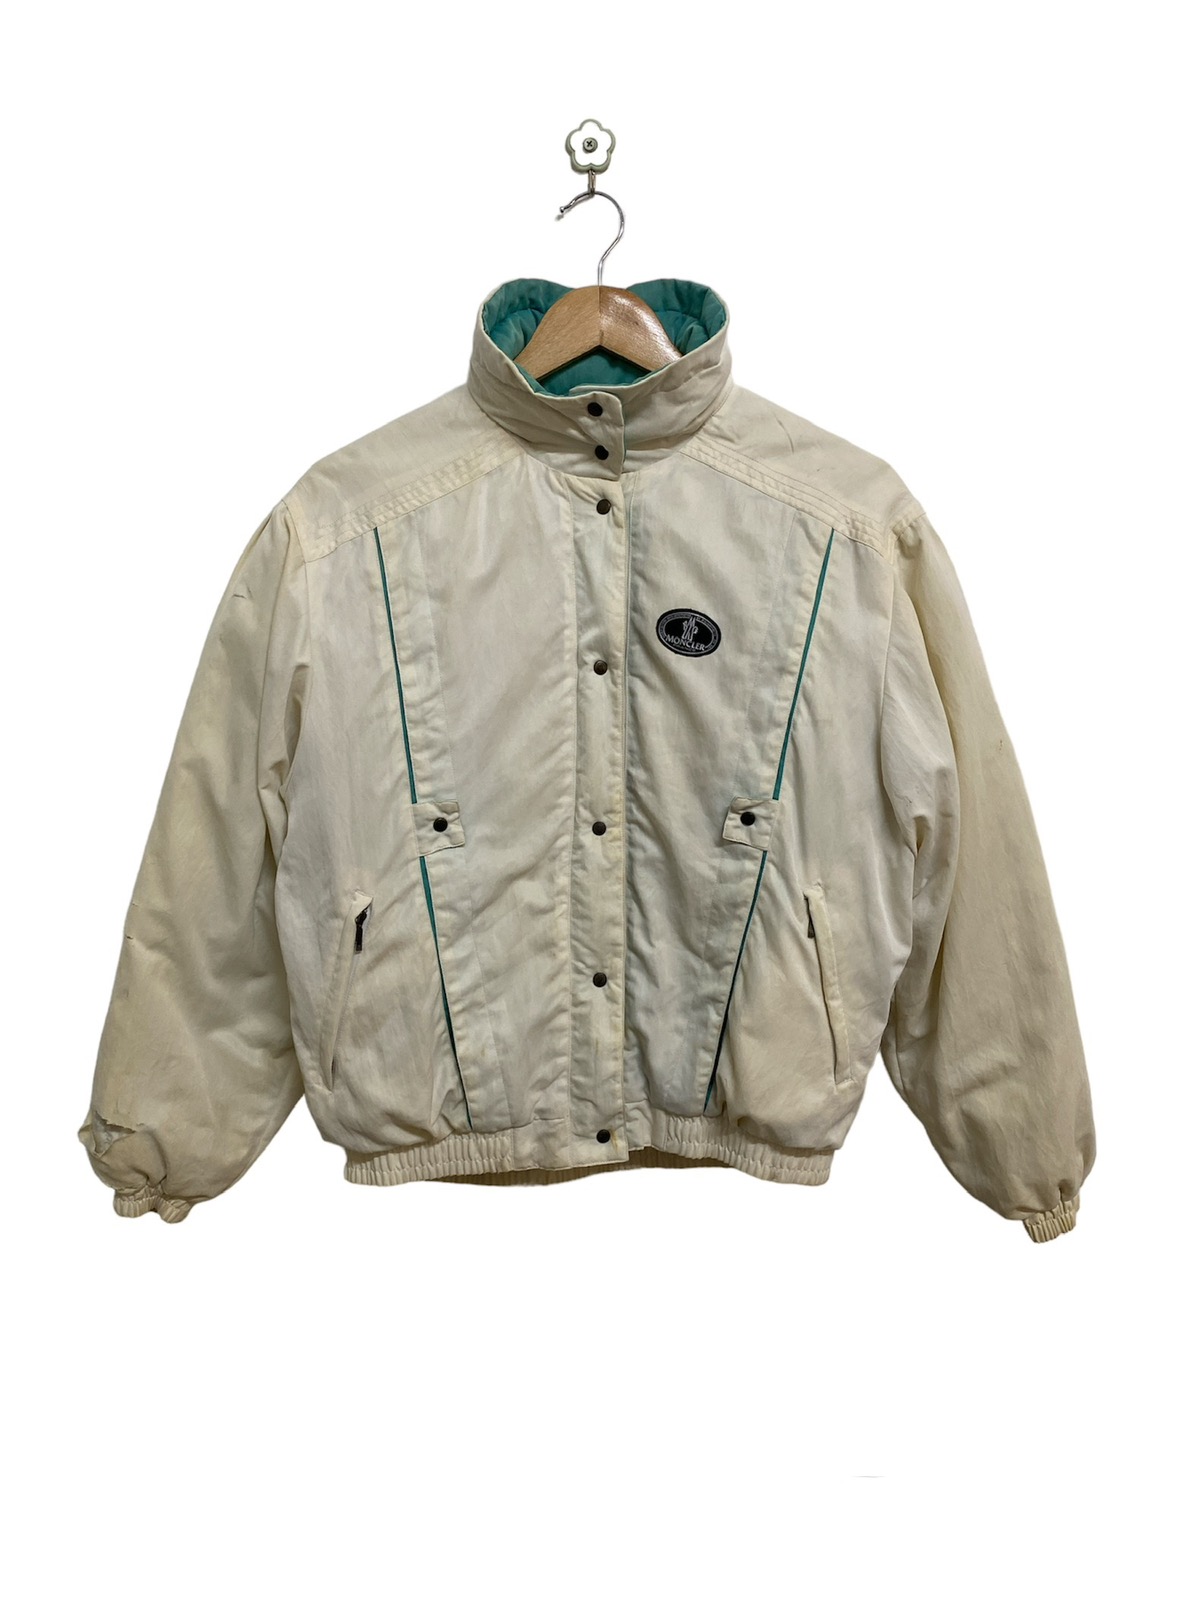 Vintage Moncler Ski Wear Jacket - 2